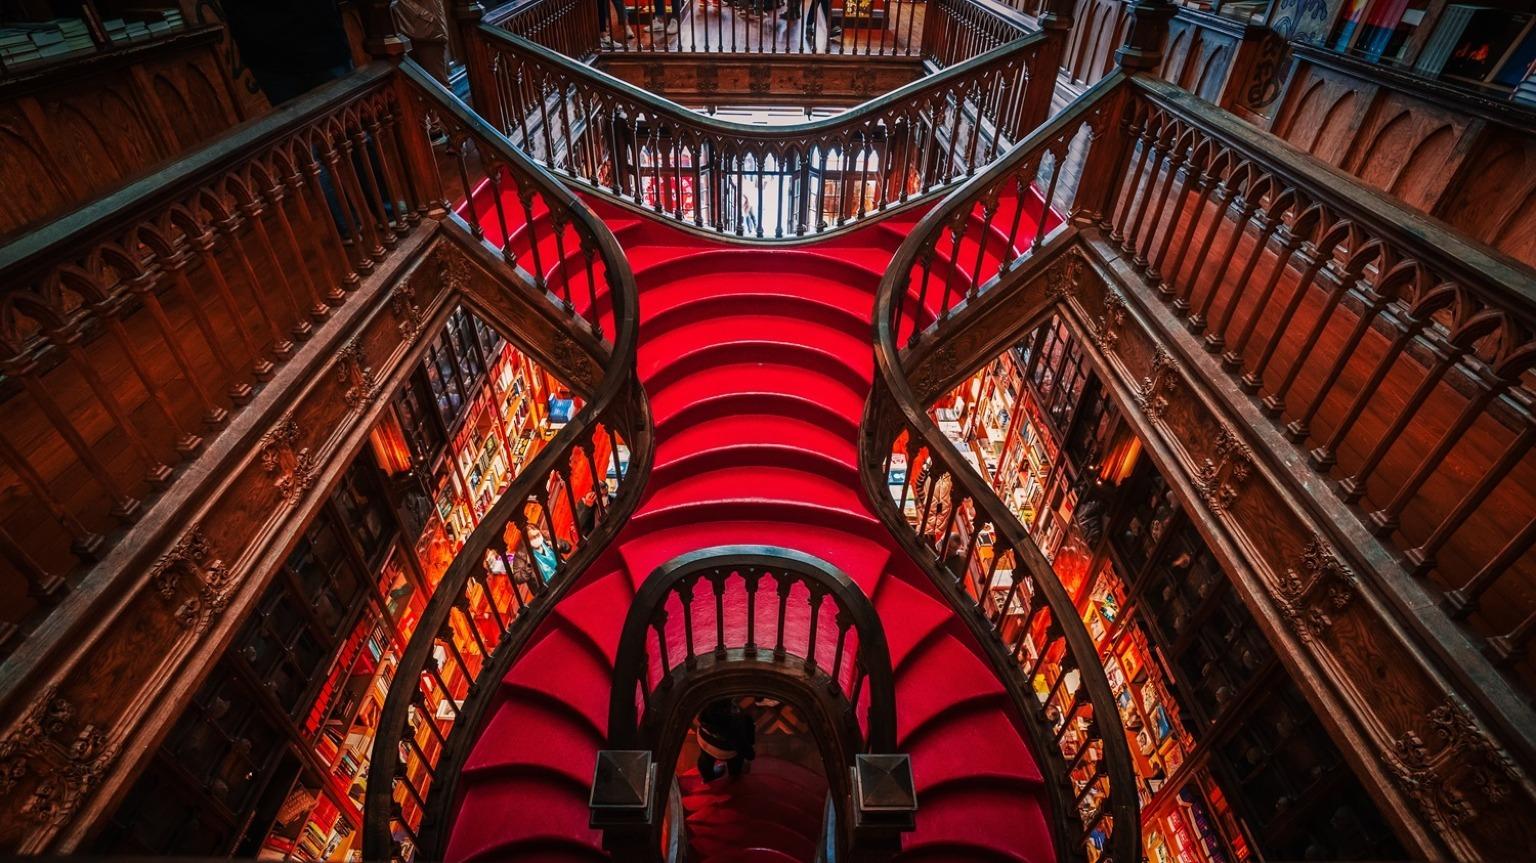 Suba la caprichosa escalera roja de Livraria Lello, la emblemática librería de Oporto, donde cada peldaño evoca una historia de encanto literario y esplendor arquitectónico.